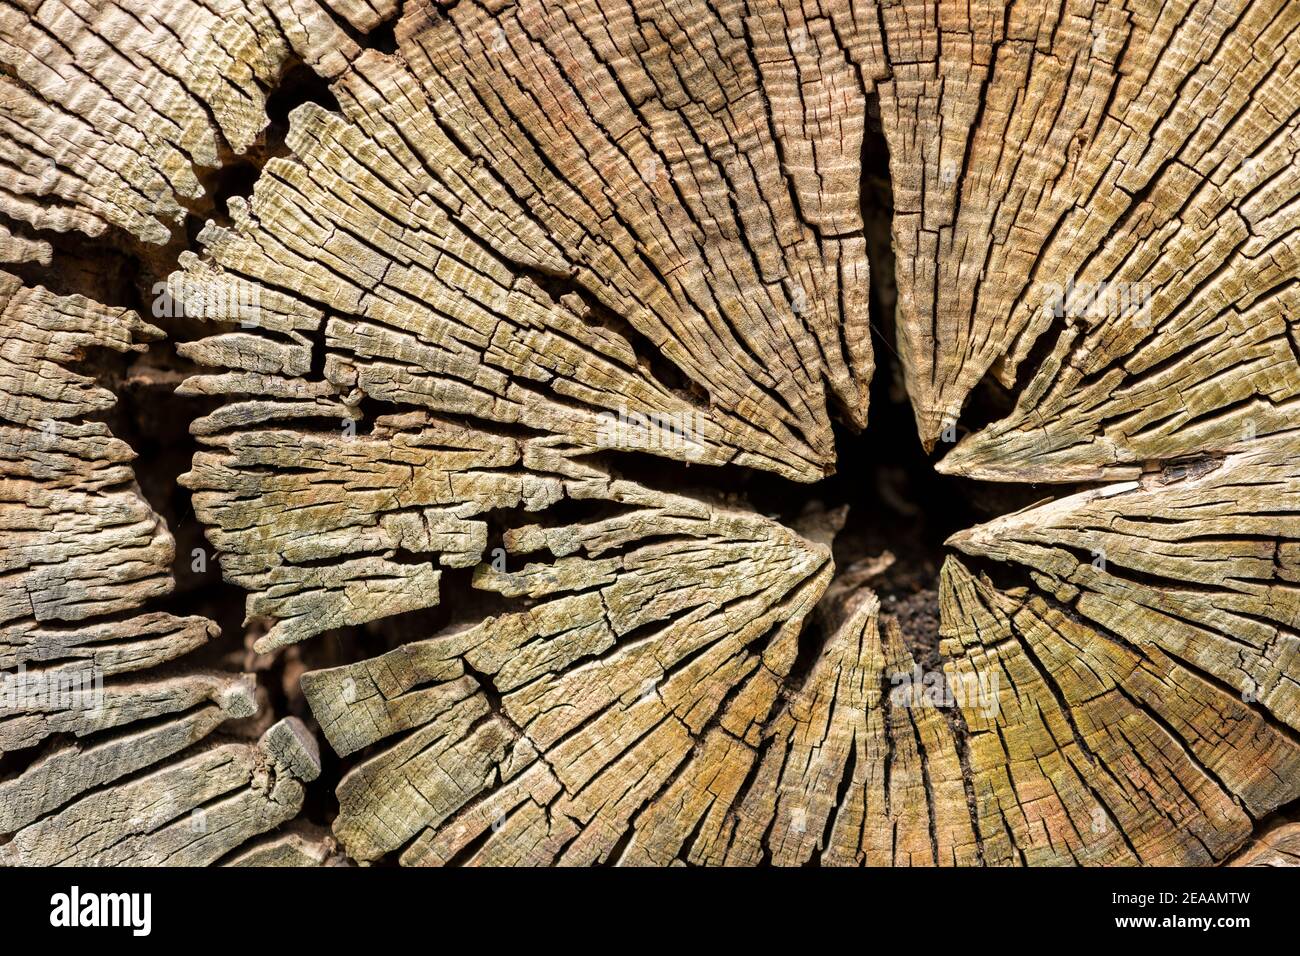 Baumscheibe mit trocknenden Rissen Stockfotografie - Alamy